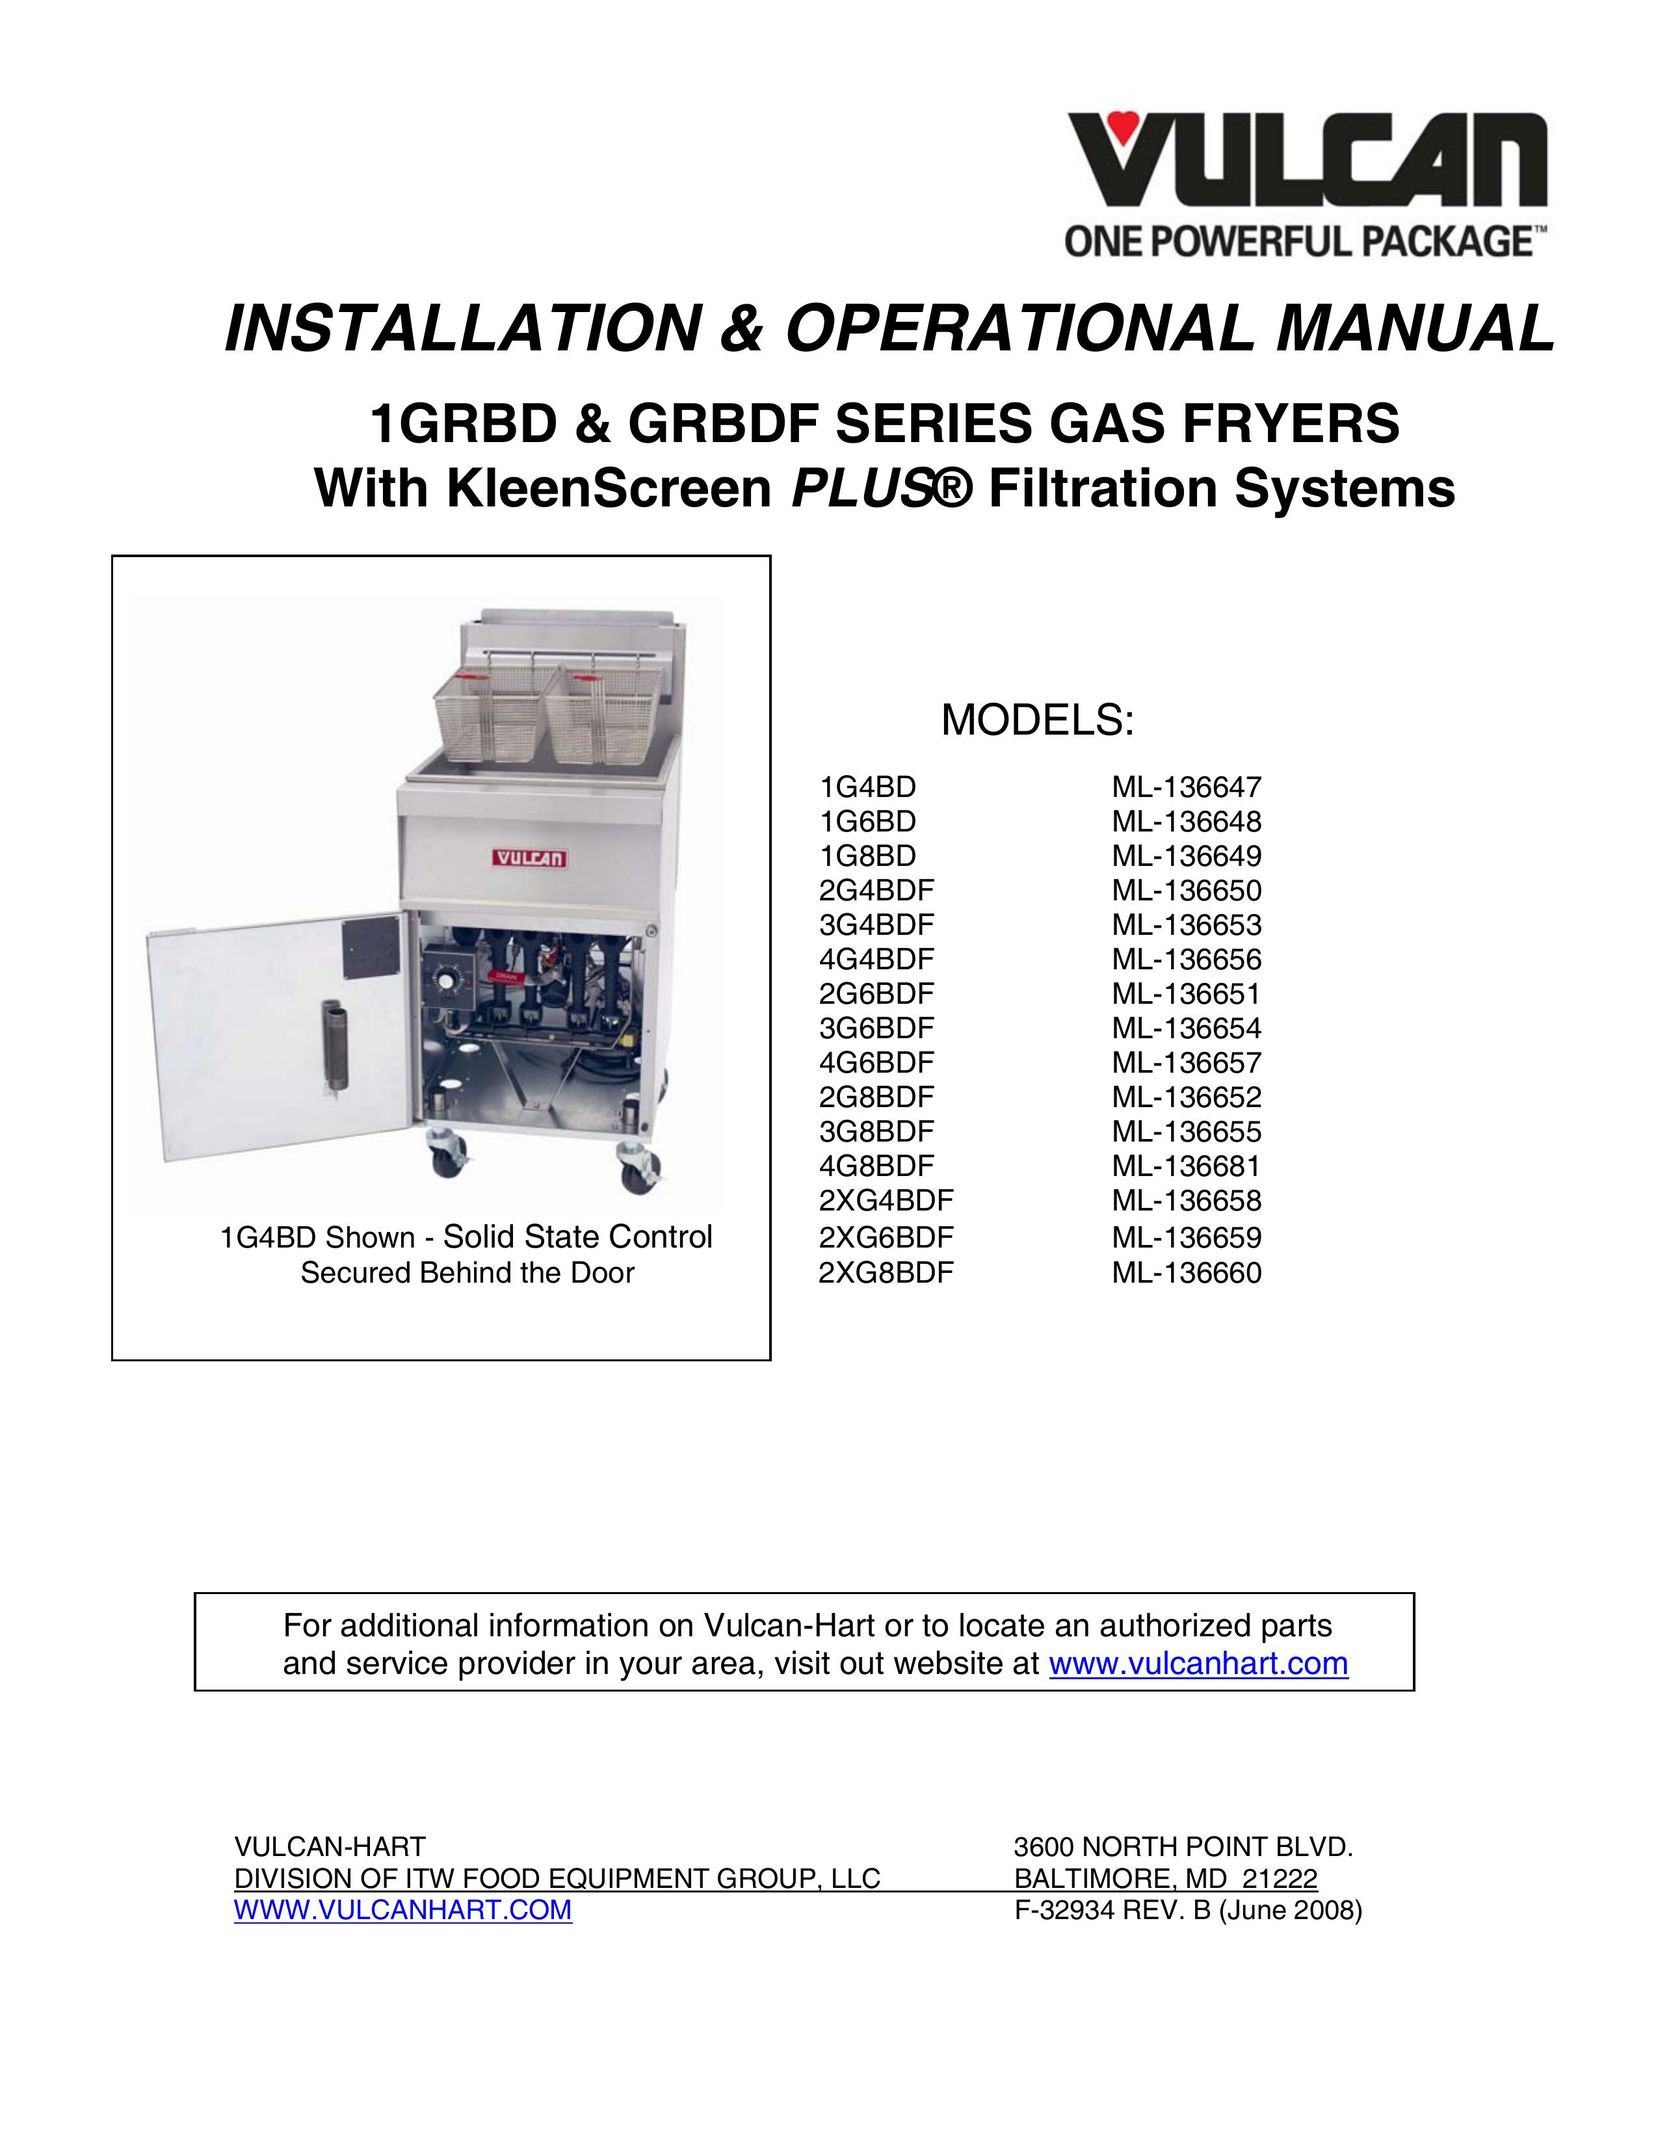 Vulcan-Hart 1G8BD ML-136649 Fryer User Manual